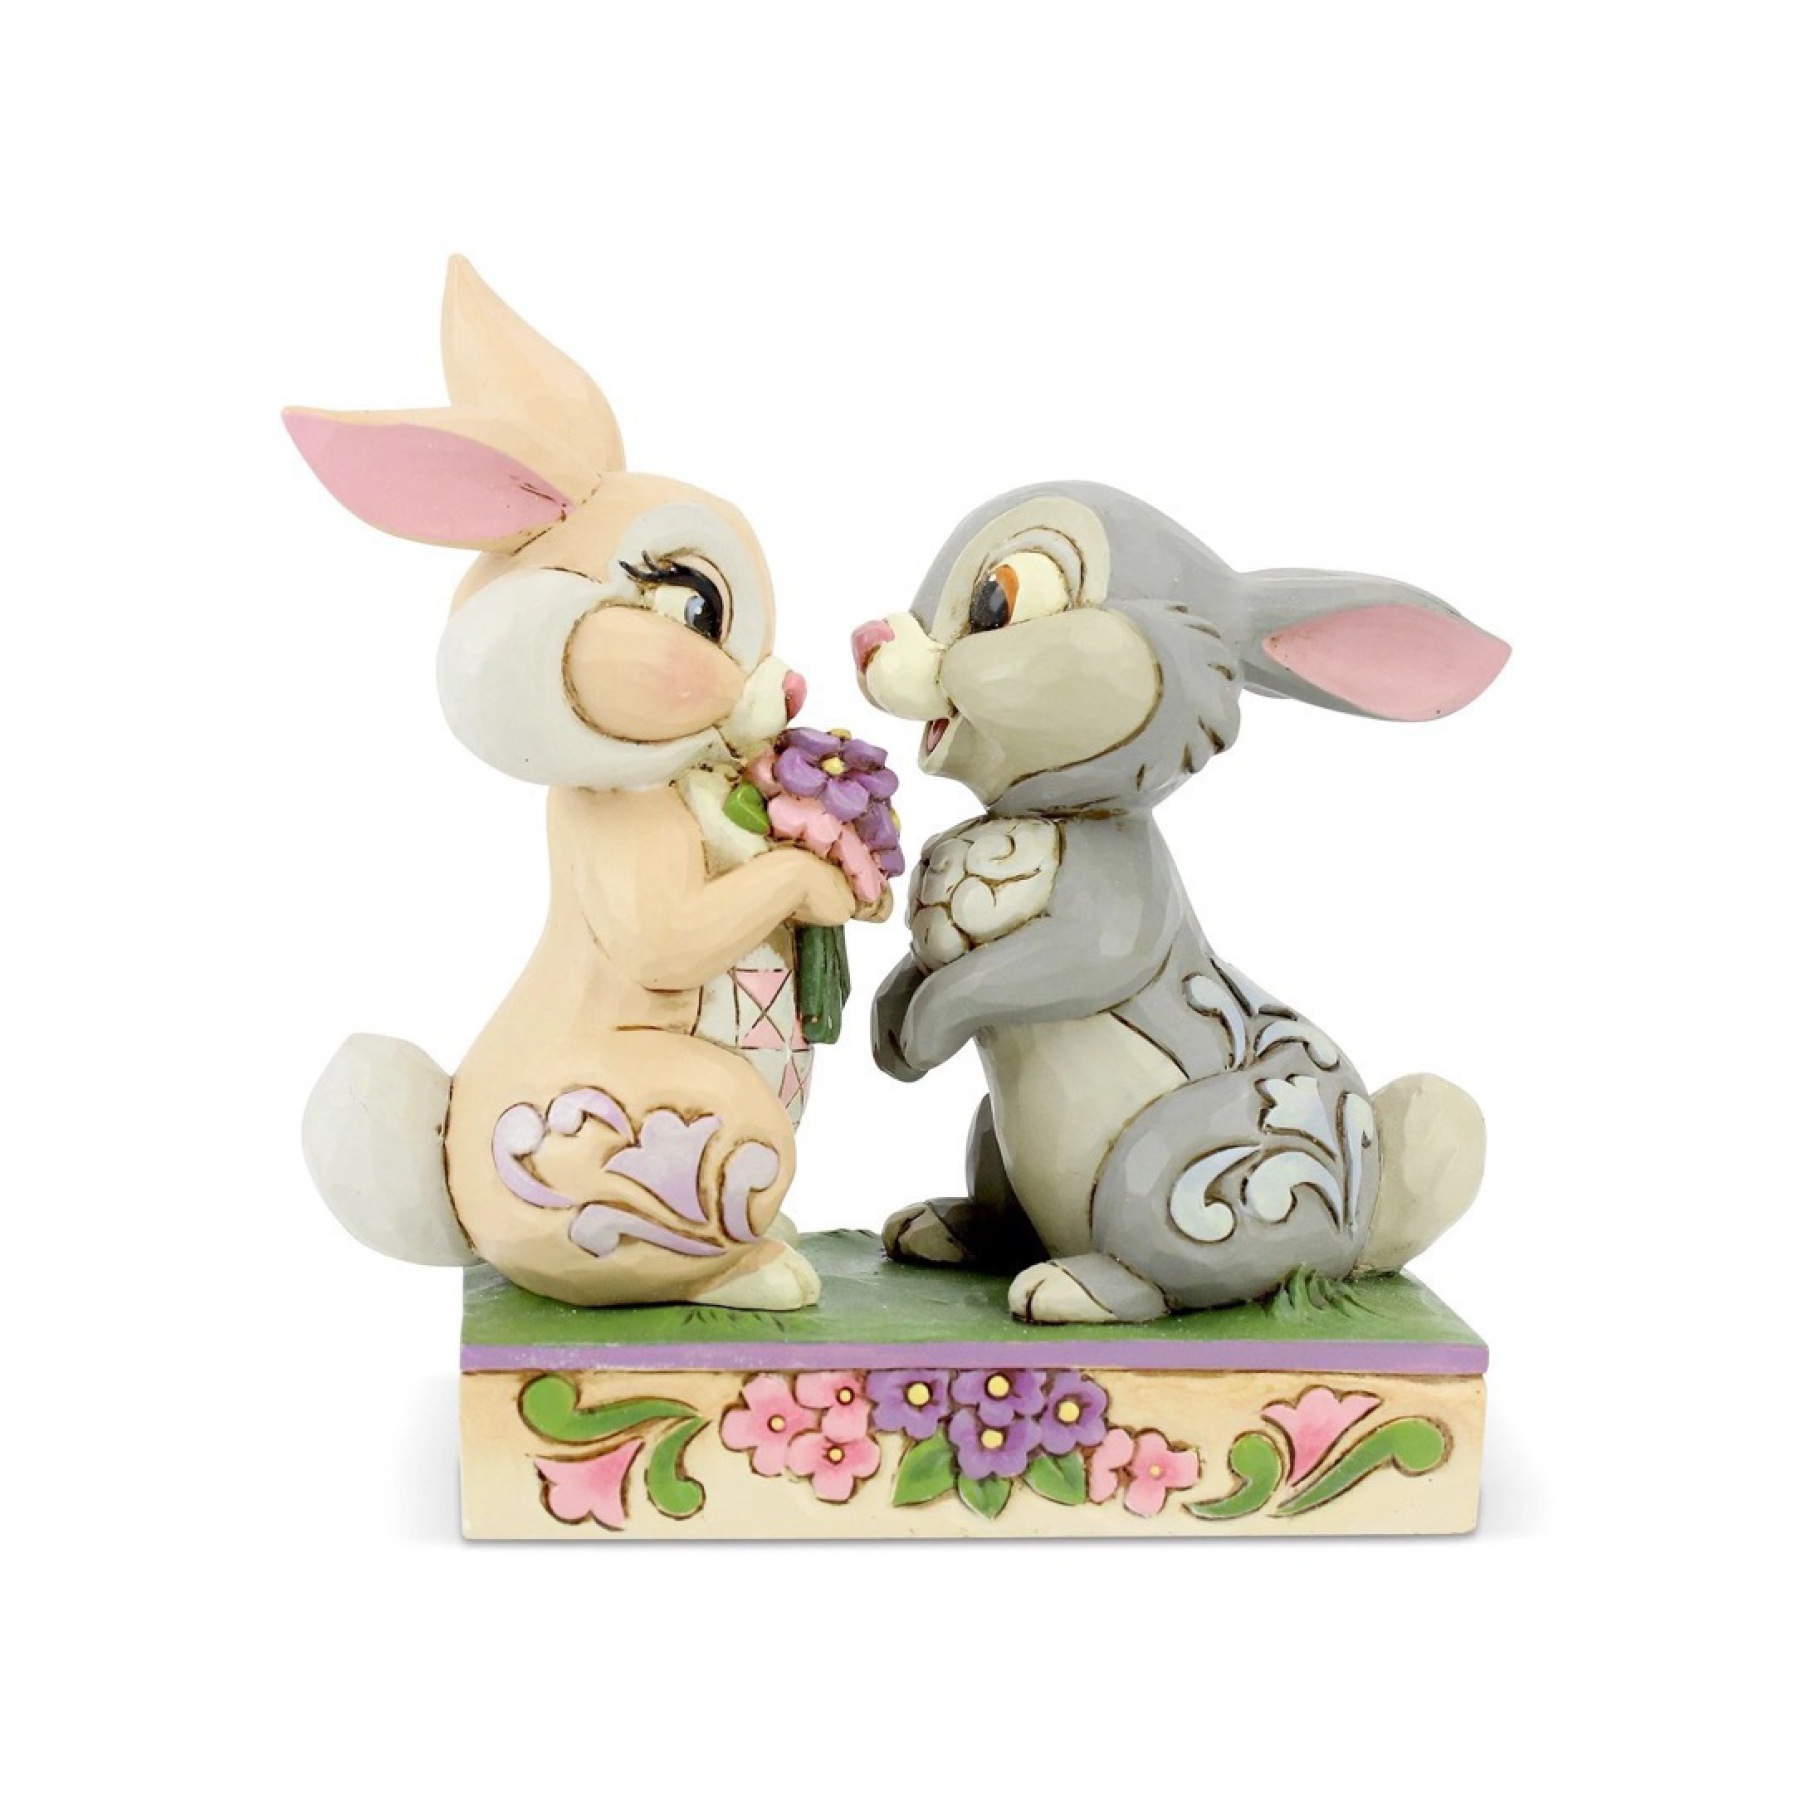  مجسمه بامبی Thumper and Blossom 